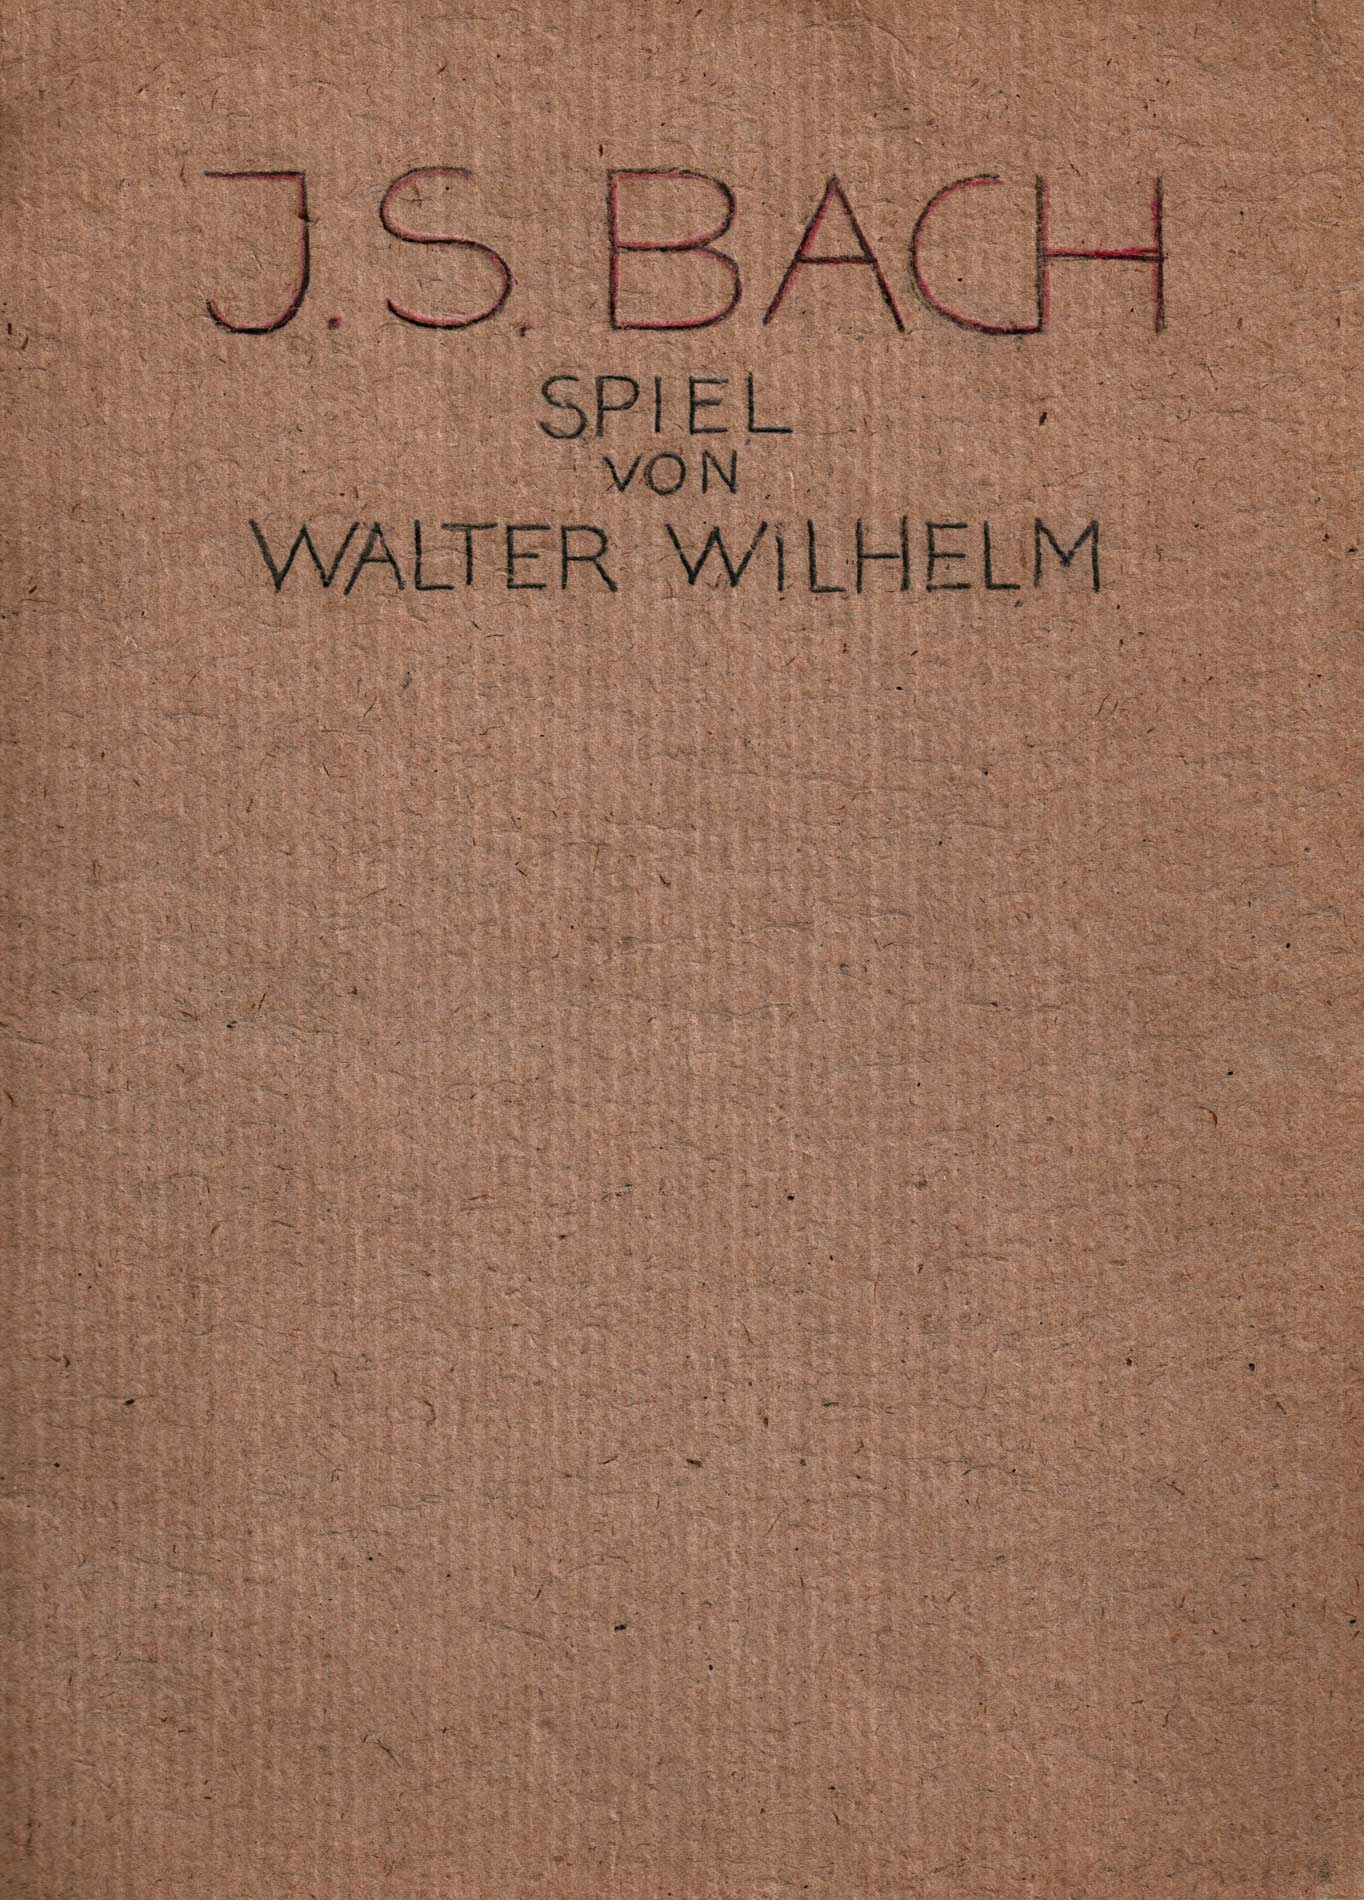 J.S.Bach Spiel von Walter Wilhelm (Winckelmann-Museum Stendal CC BY-NC-SA)